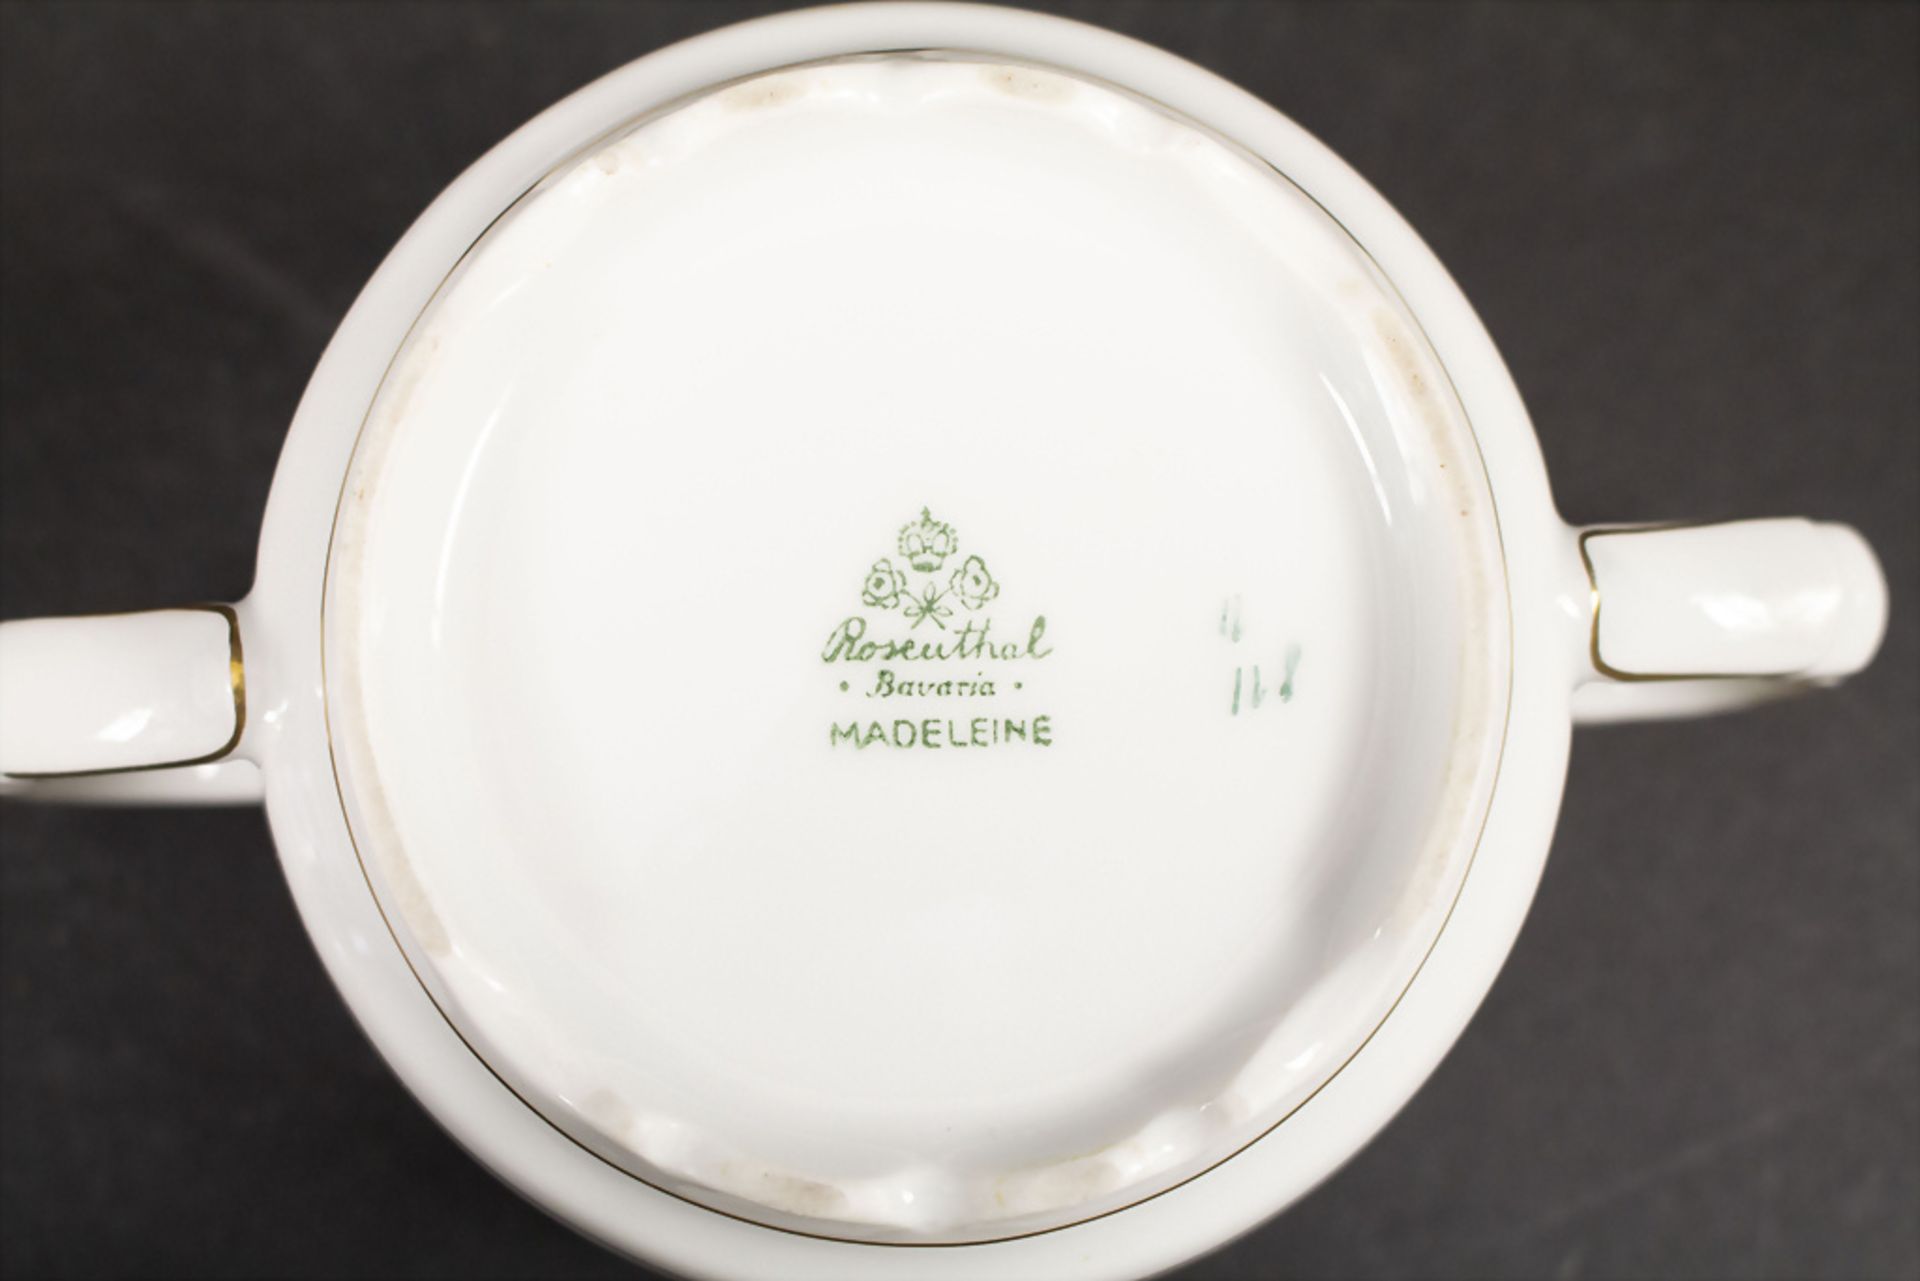 Art Déco Zuckerdose 'Madeleine' / An Art Deco sugar bowl 'Madeleine', Rosenthal, Selb, um 1928 - Image 3 of 3